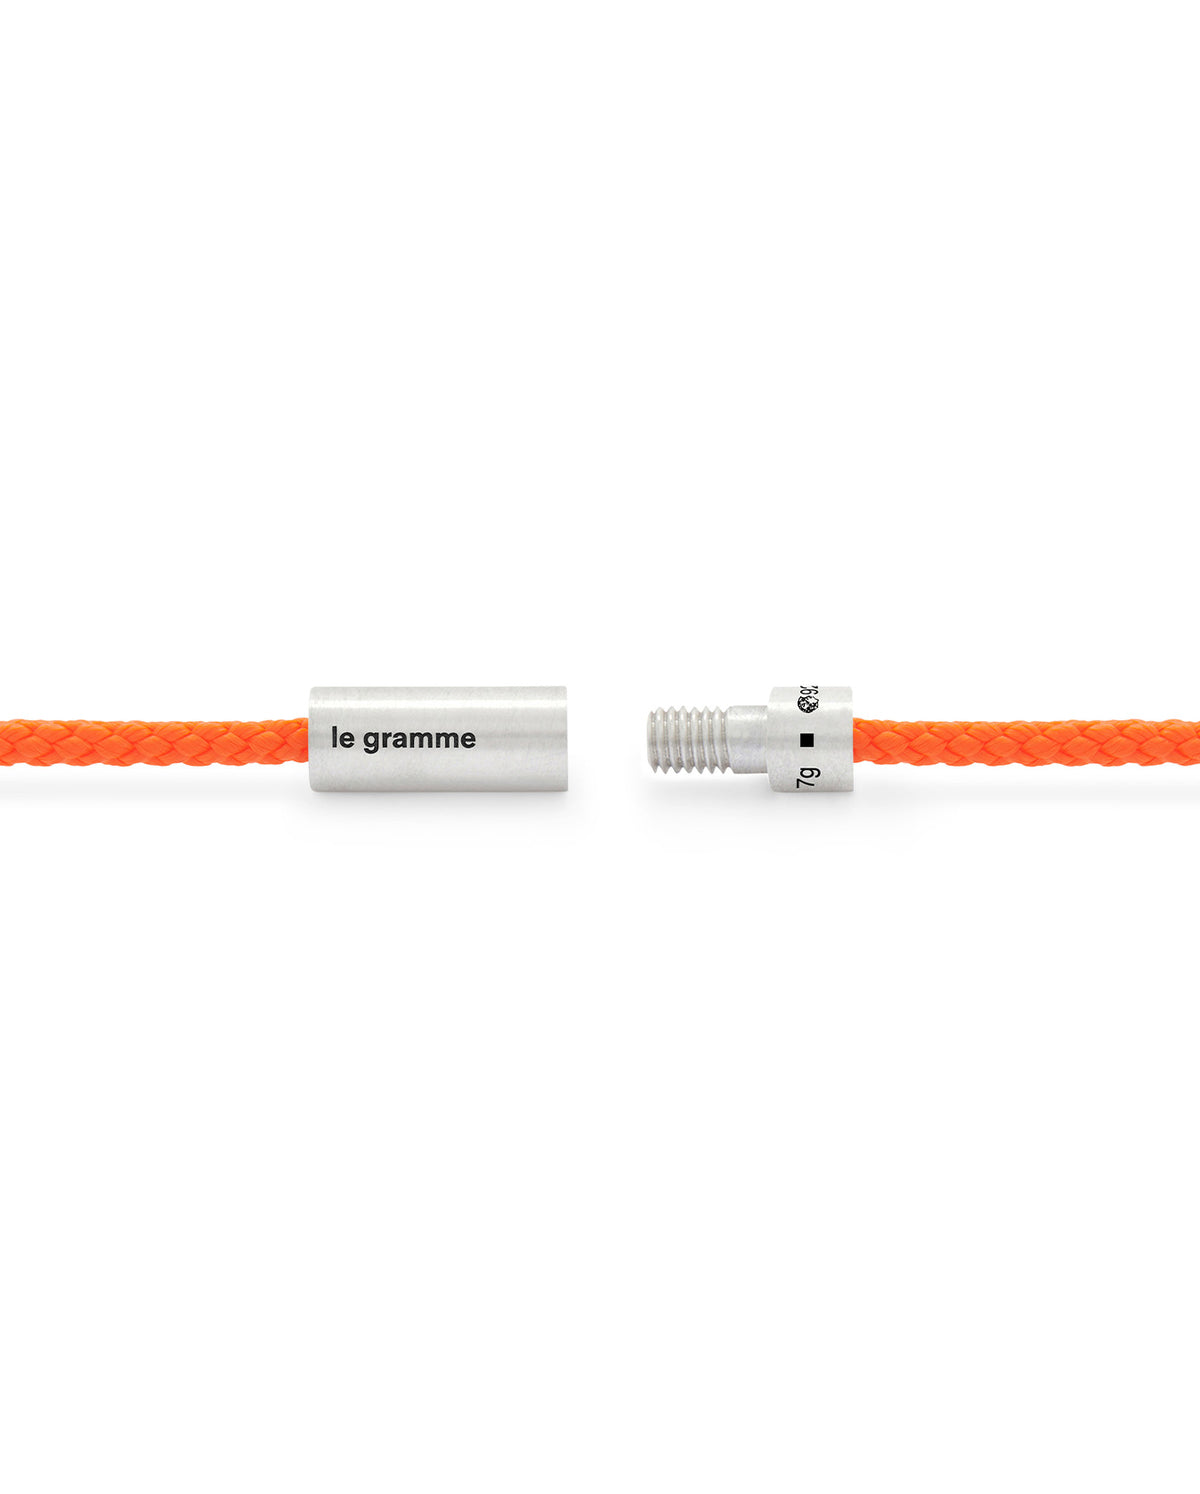 7G Cable Nato Bracelet - Orange